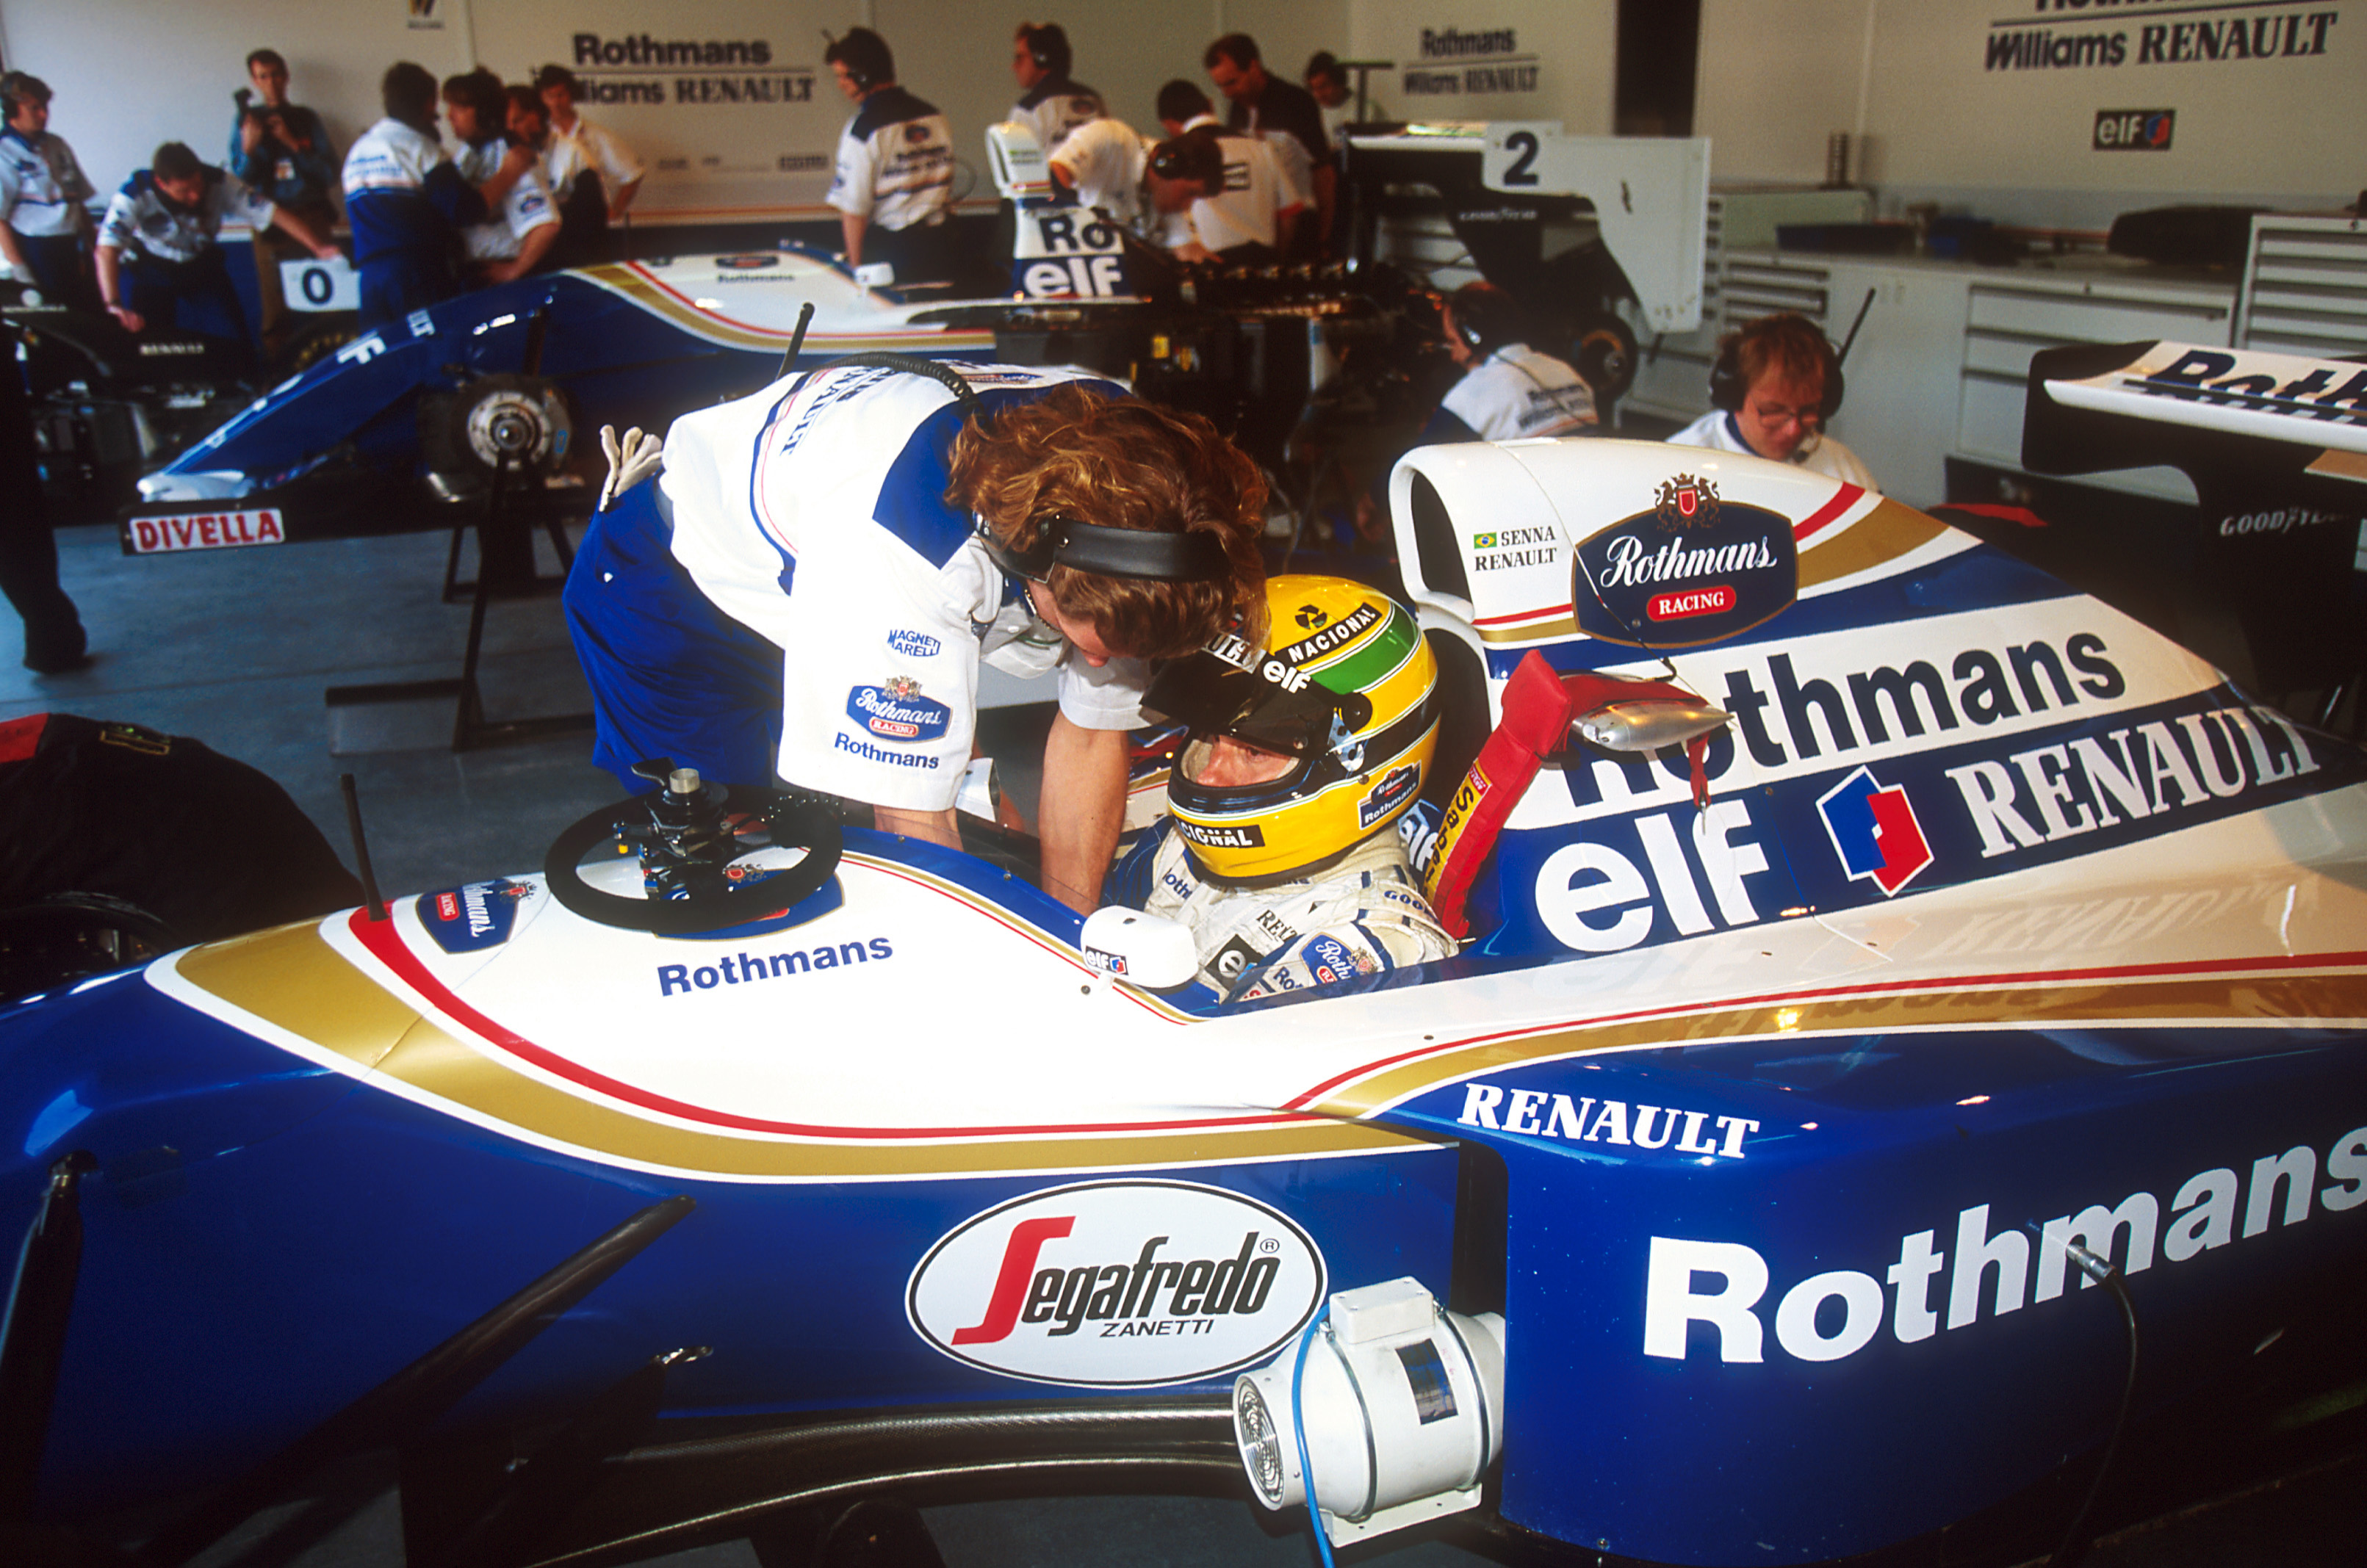 Det ultimate par - Ayrton Senna og Williams. Dessverre inntraff tragedien så altfor fort.